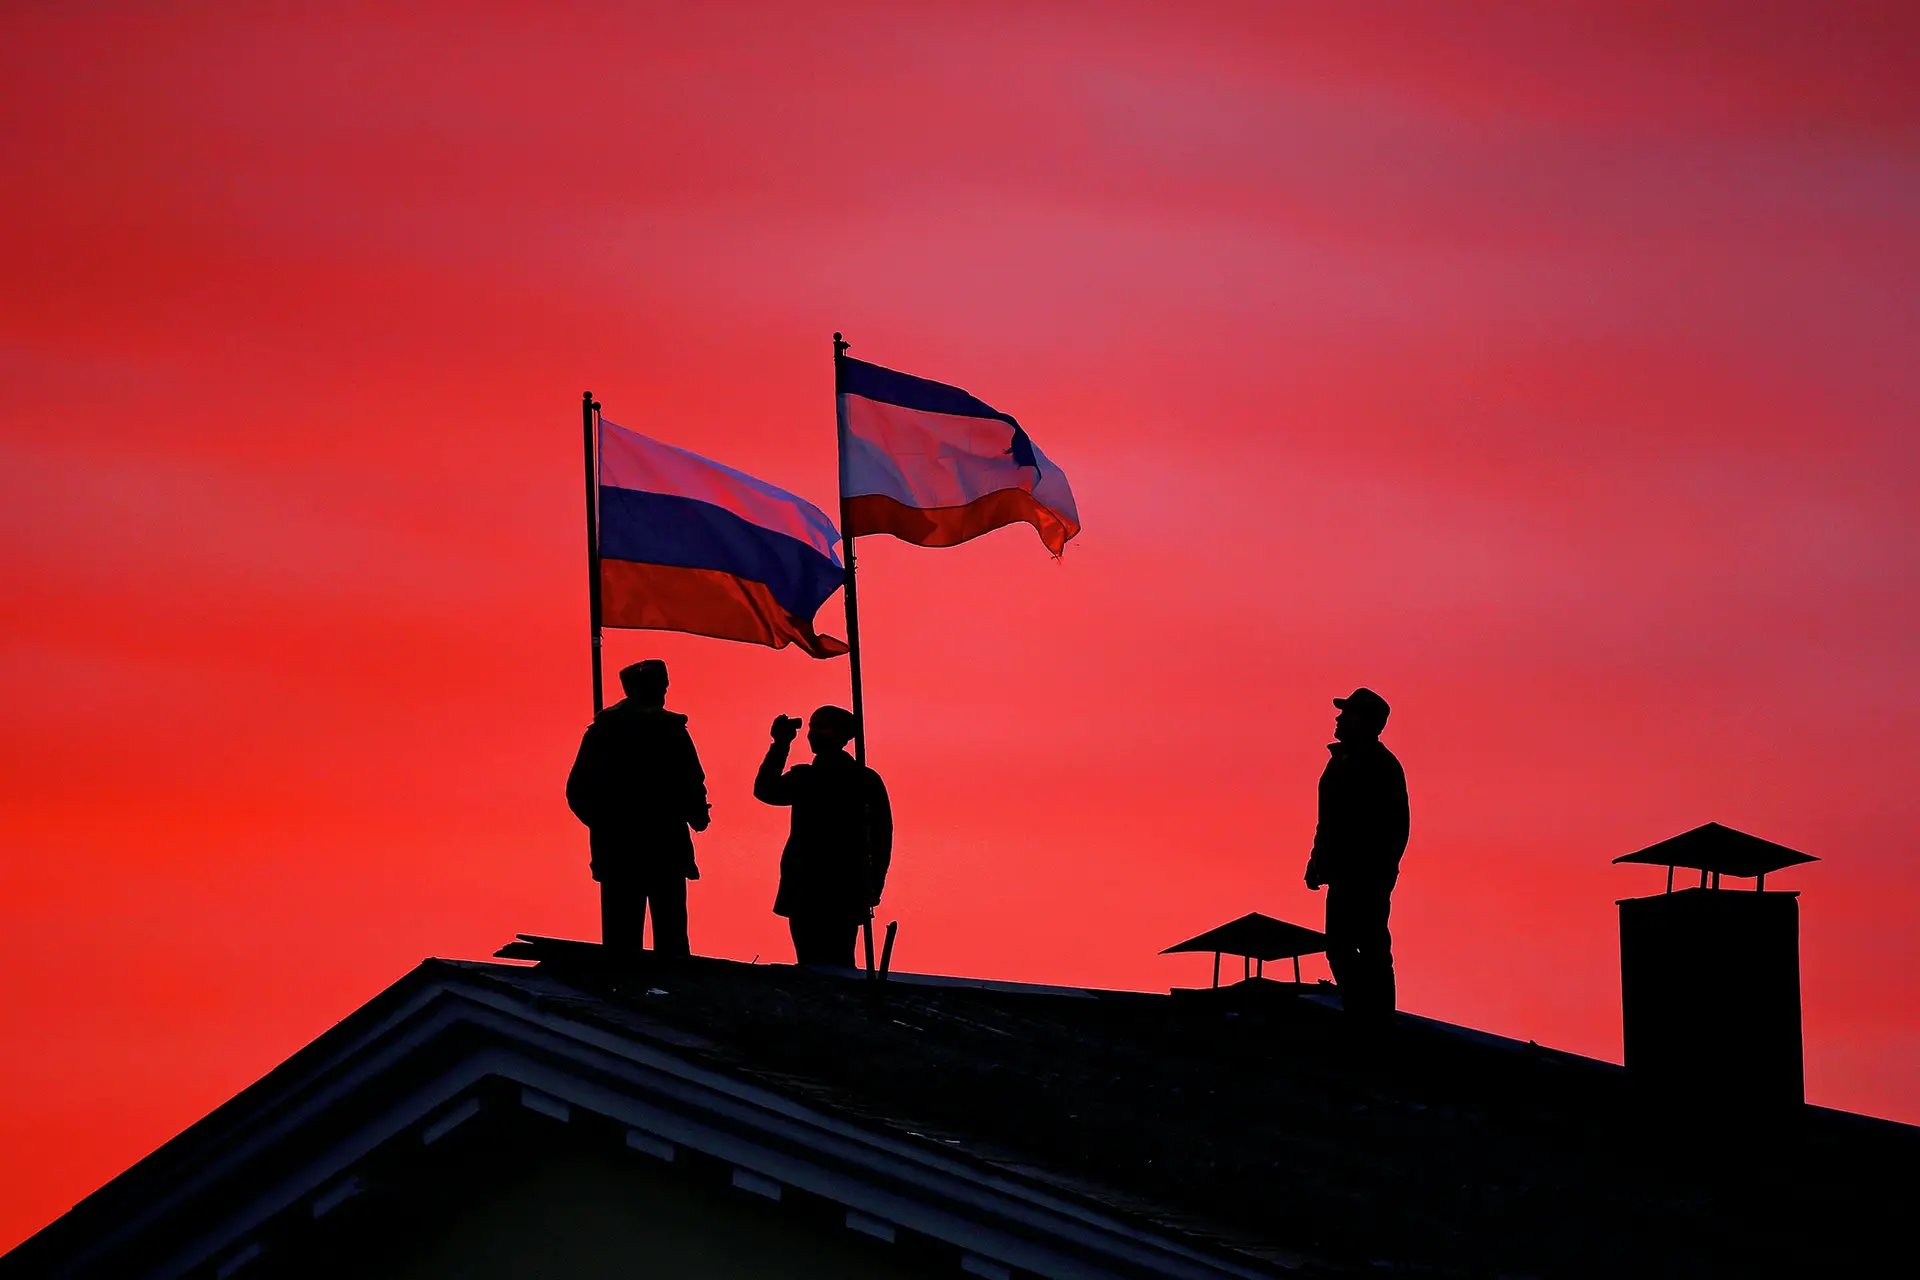 Conquista Cossacos a hastear as bandeiras da Rússia e da Crimeia num edifício governamental em Bakhchysarai, na Ucrânia, a 17 de março de 2014, após um referendo comprovadamente fraudulento ter ditado a anexação da Crimeia à Federação Russa, com 97% de votos a favor